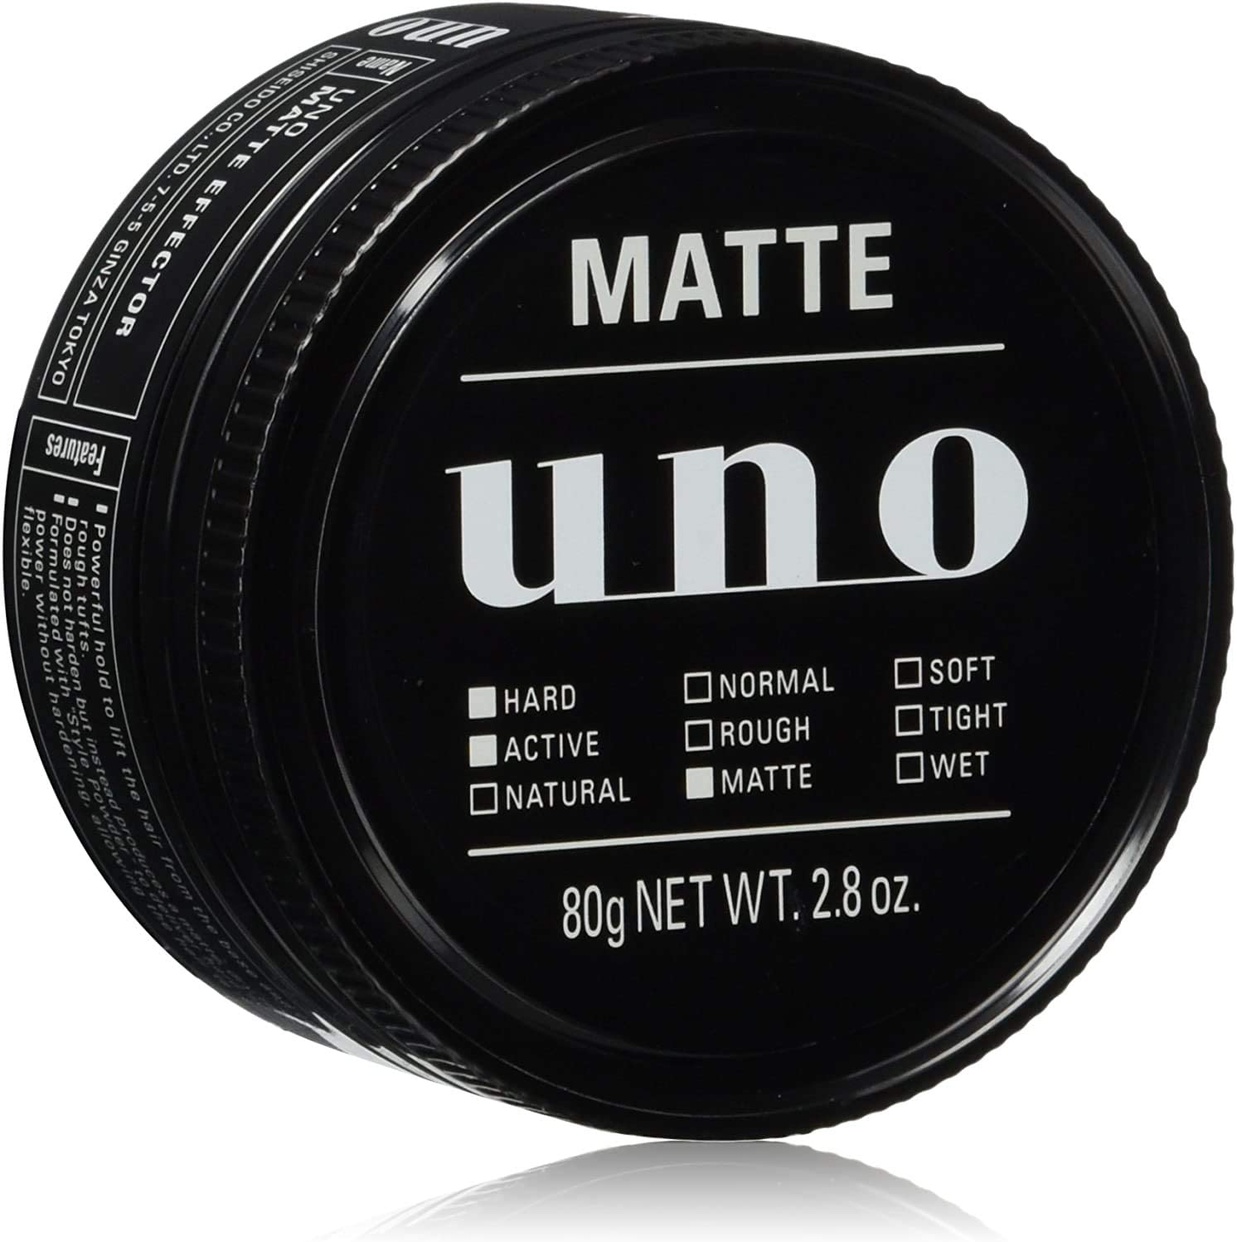 uno(ウーノ) マットエフェクターの商品画像1 